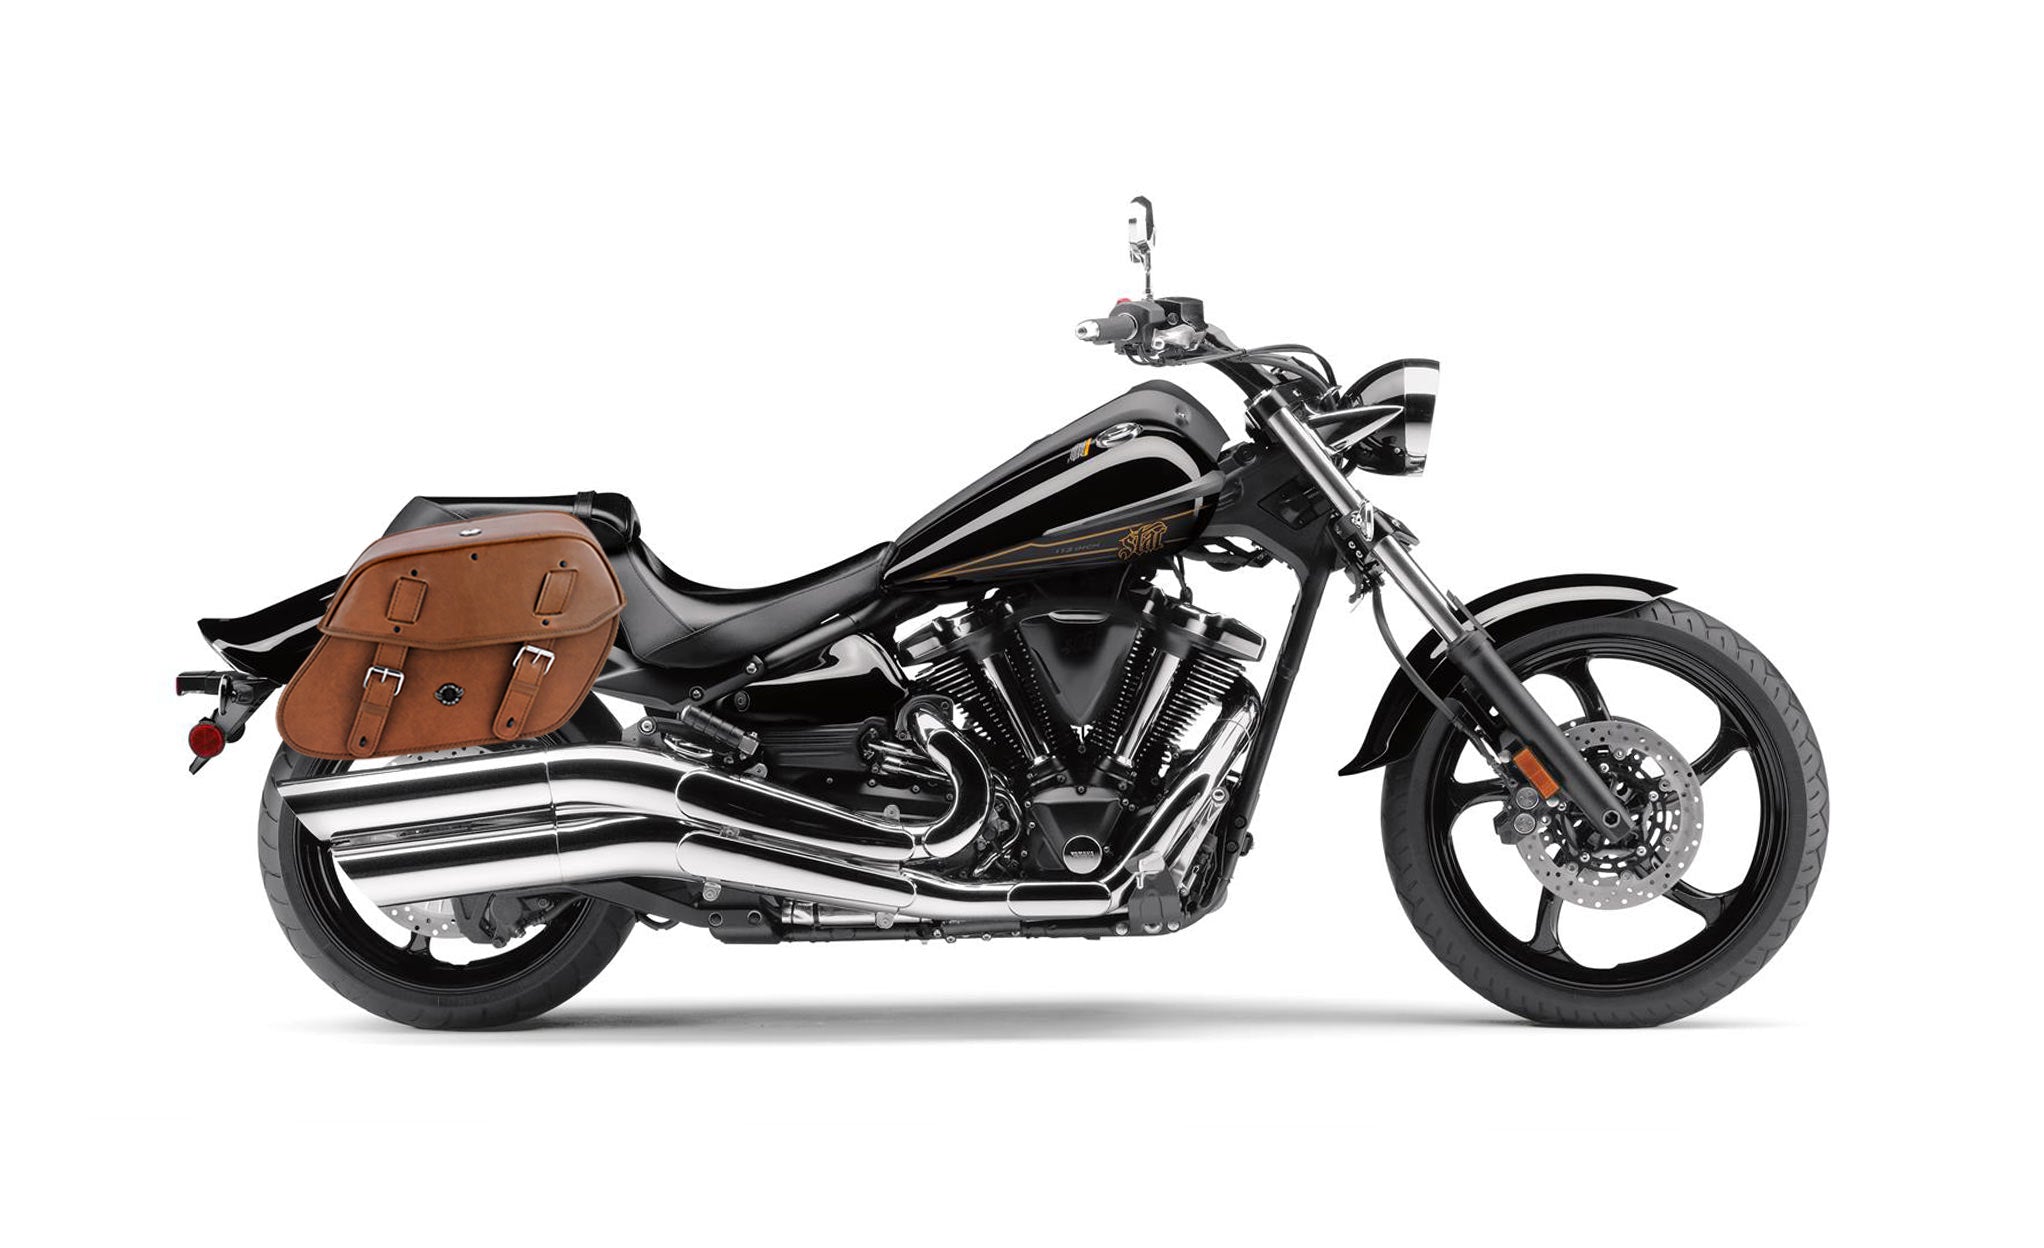 Viking Odin Brown Large Yamaha Raider Leather Motorcycle Saddlebags on Bike Photo @expand